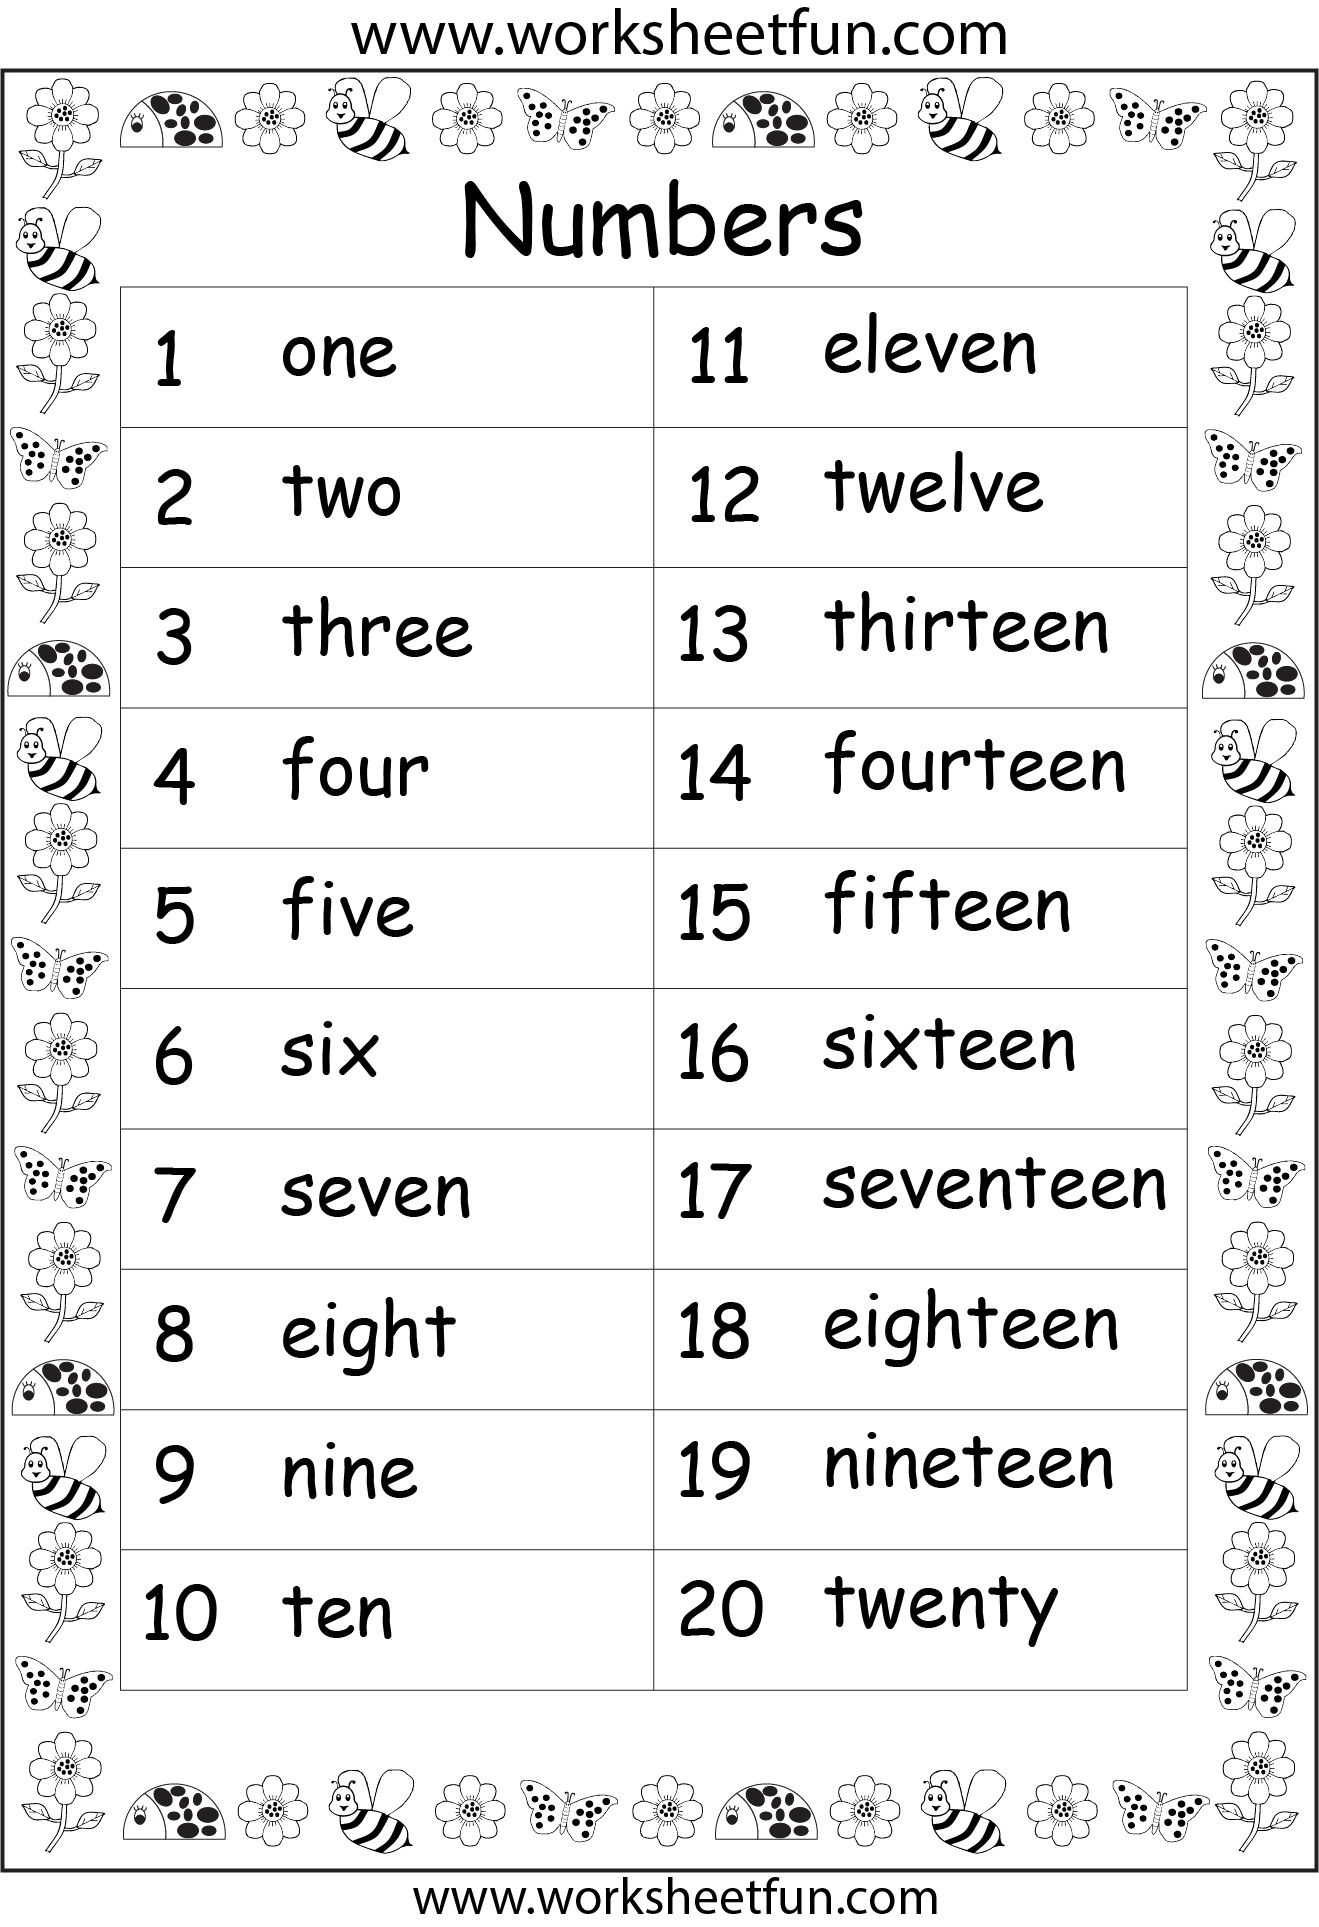 spelling-numbers-worksheets-1-20-number-words-worksheets-jumbled-gambaran